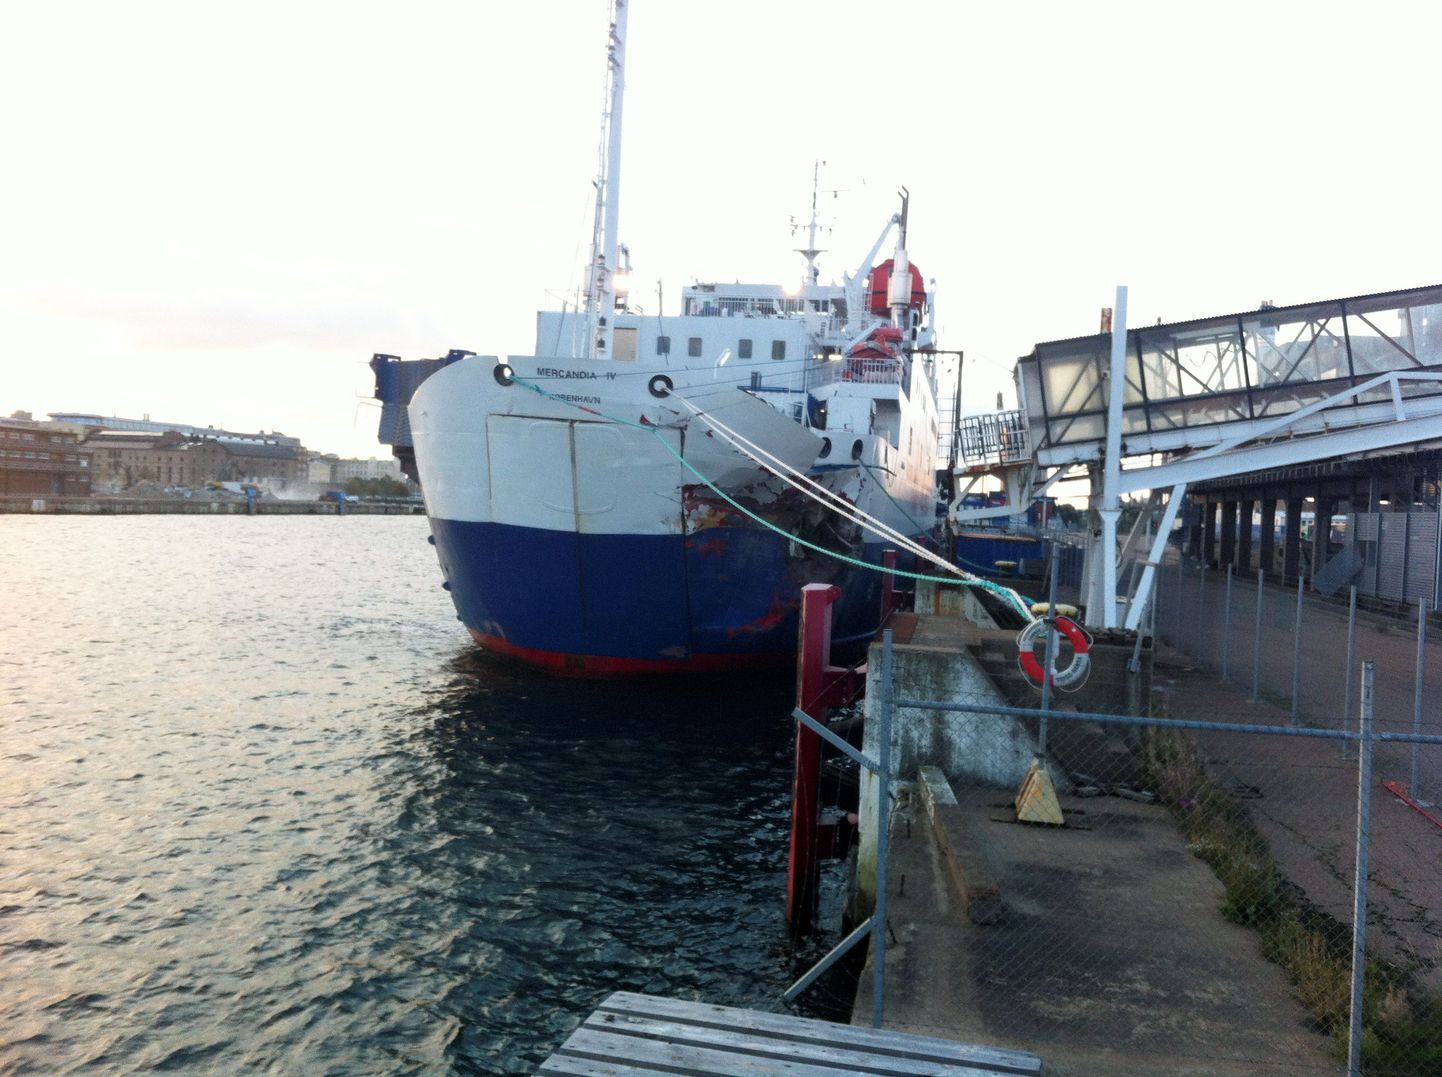 Parvlaev Mercandia IV Helsingborgi sadamas 2014. aastal, kui laev rammis nii õnnetult kaid, et üks meeskonnaliige ja üks reisija said lisaks laevale endale vigastada.